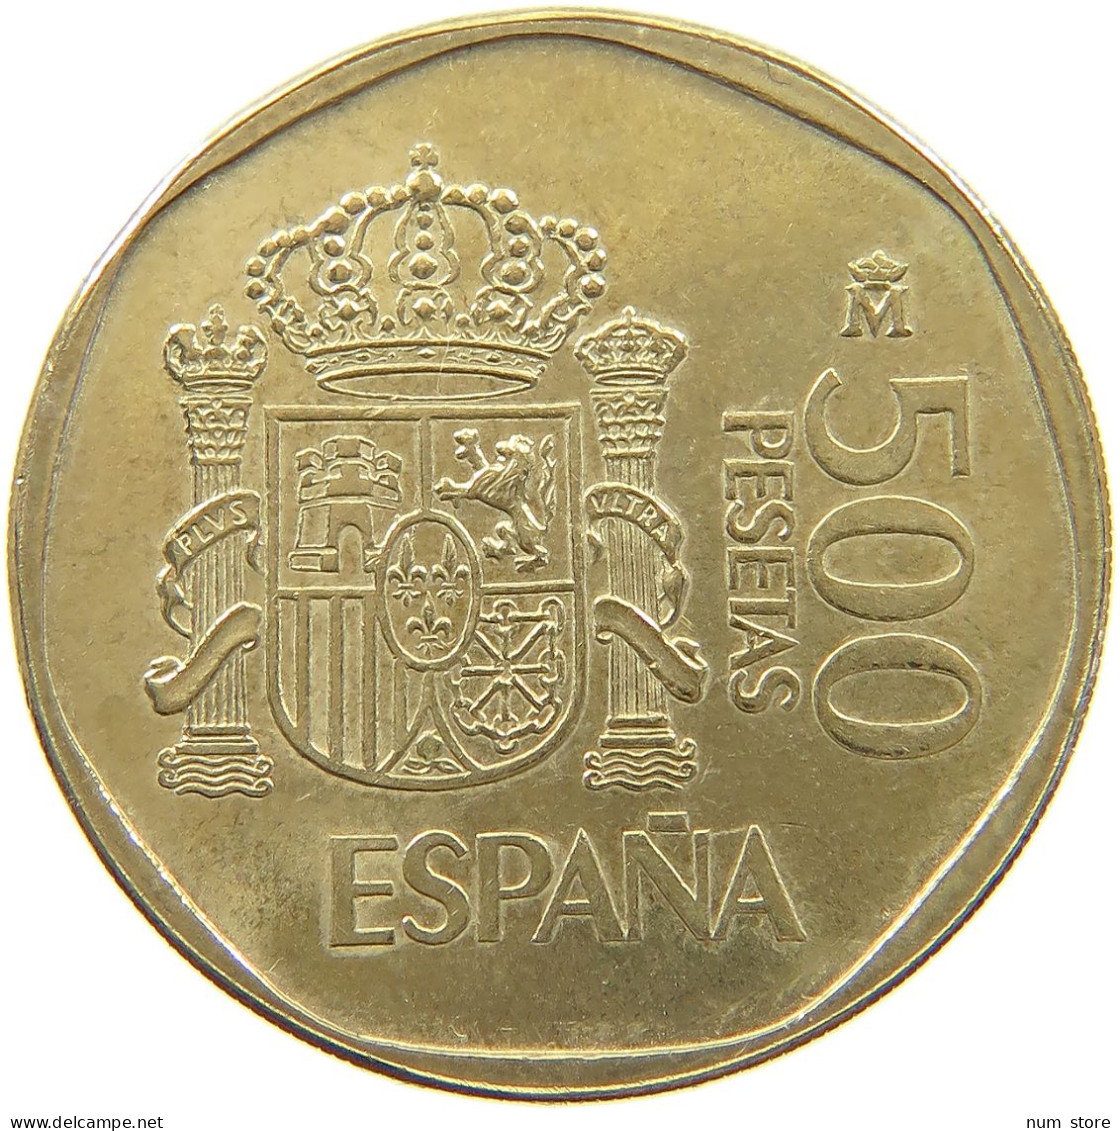 SPAIN 500 PESETAS 1988 Juan Carlos I. 1975-2014 #c075 0399 - 500 Pesetas